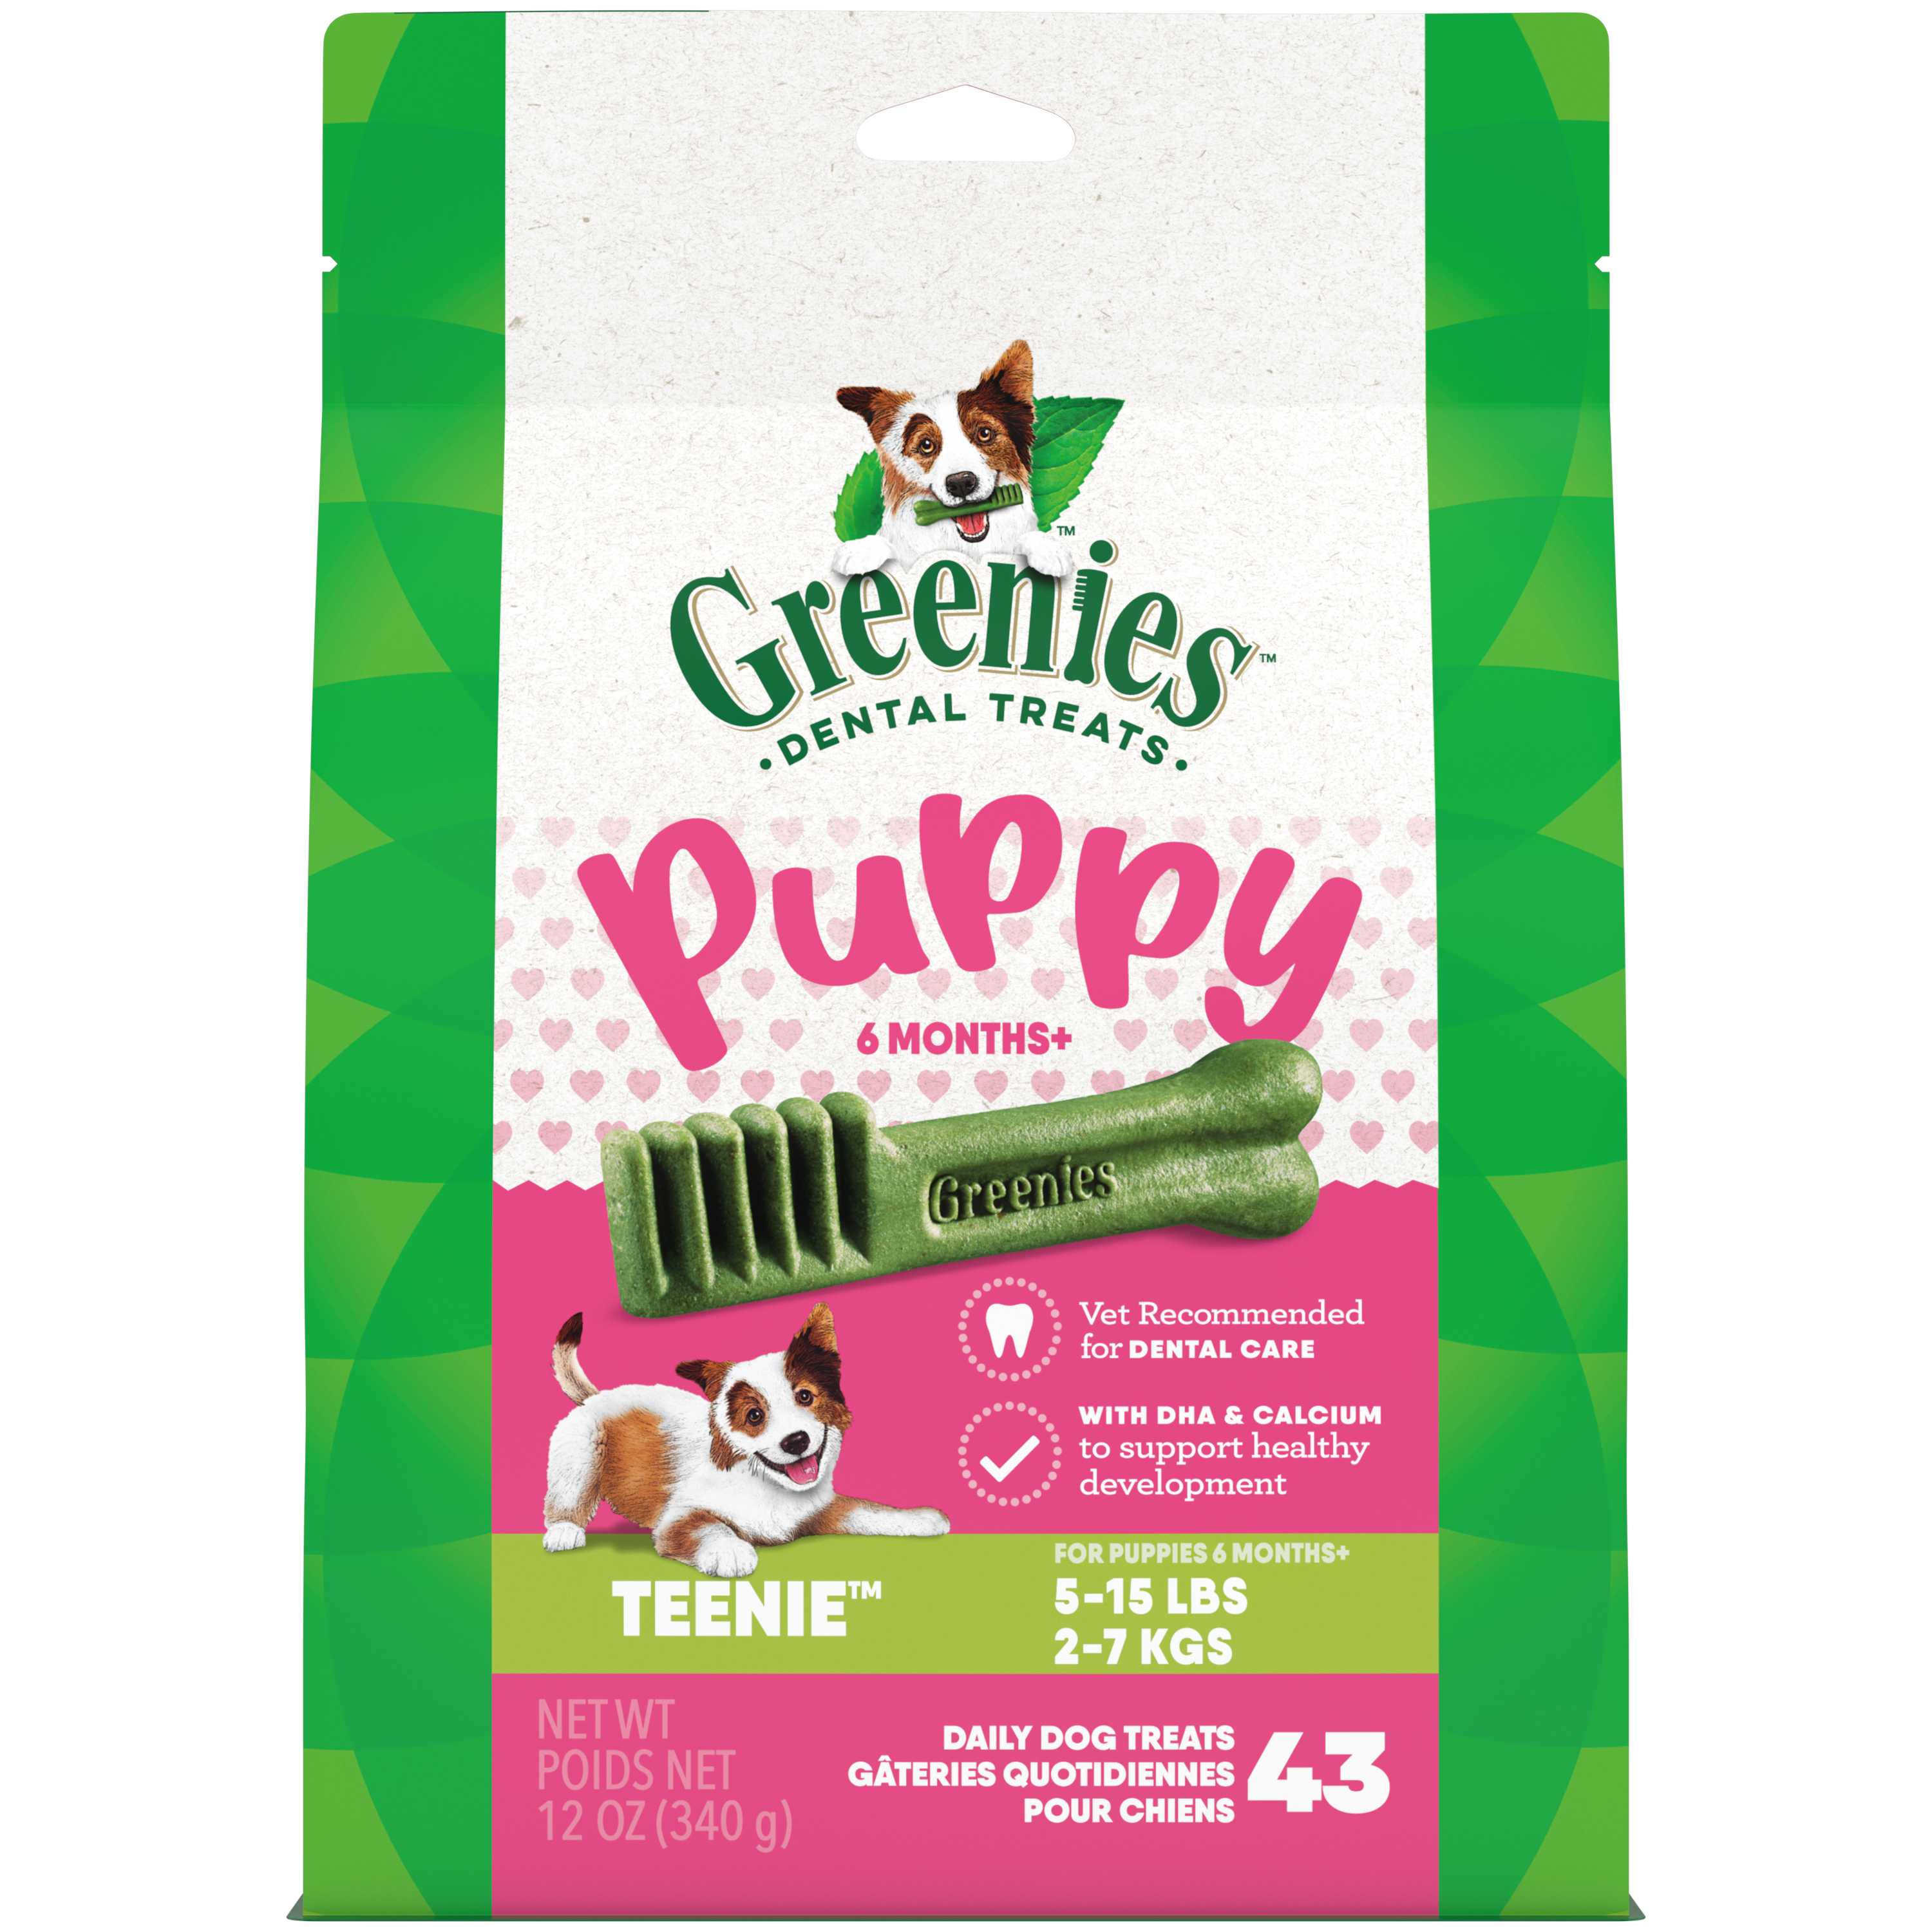 12oz Greenies PUPPY Teenie Treat Pack - Treats